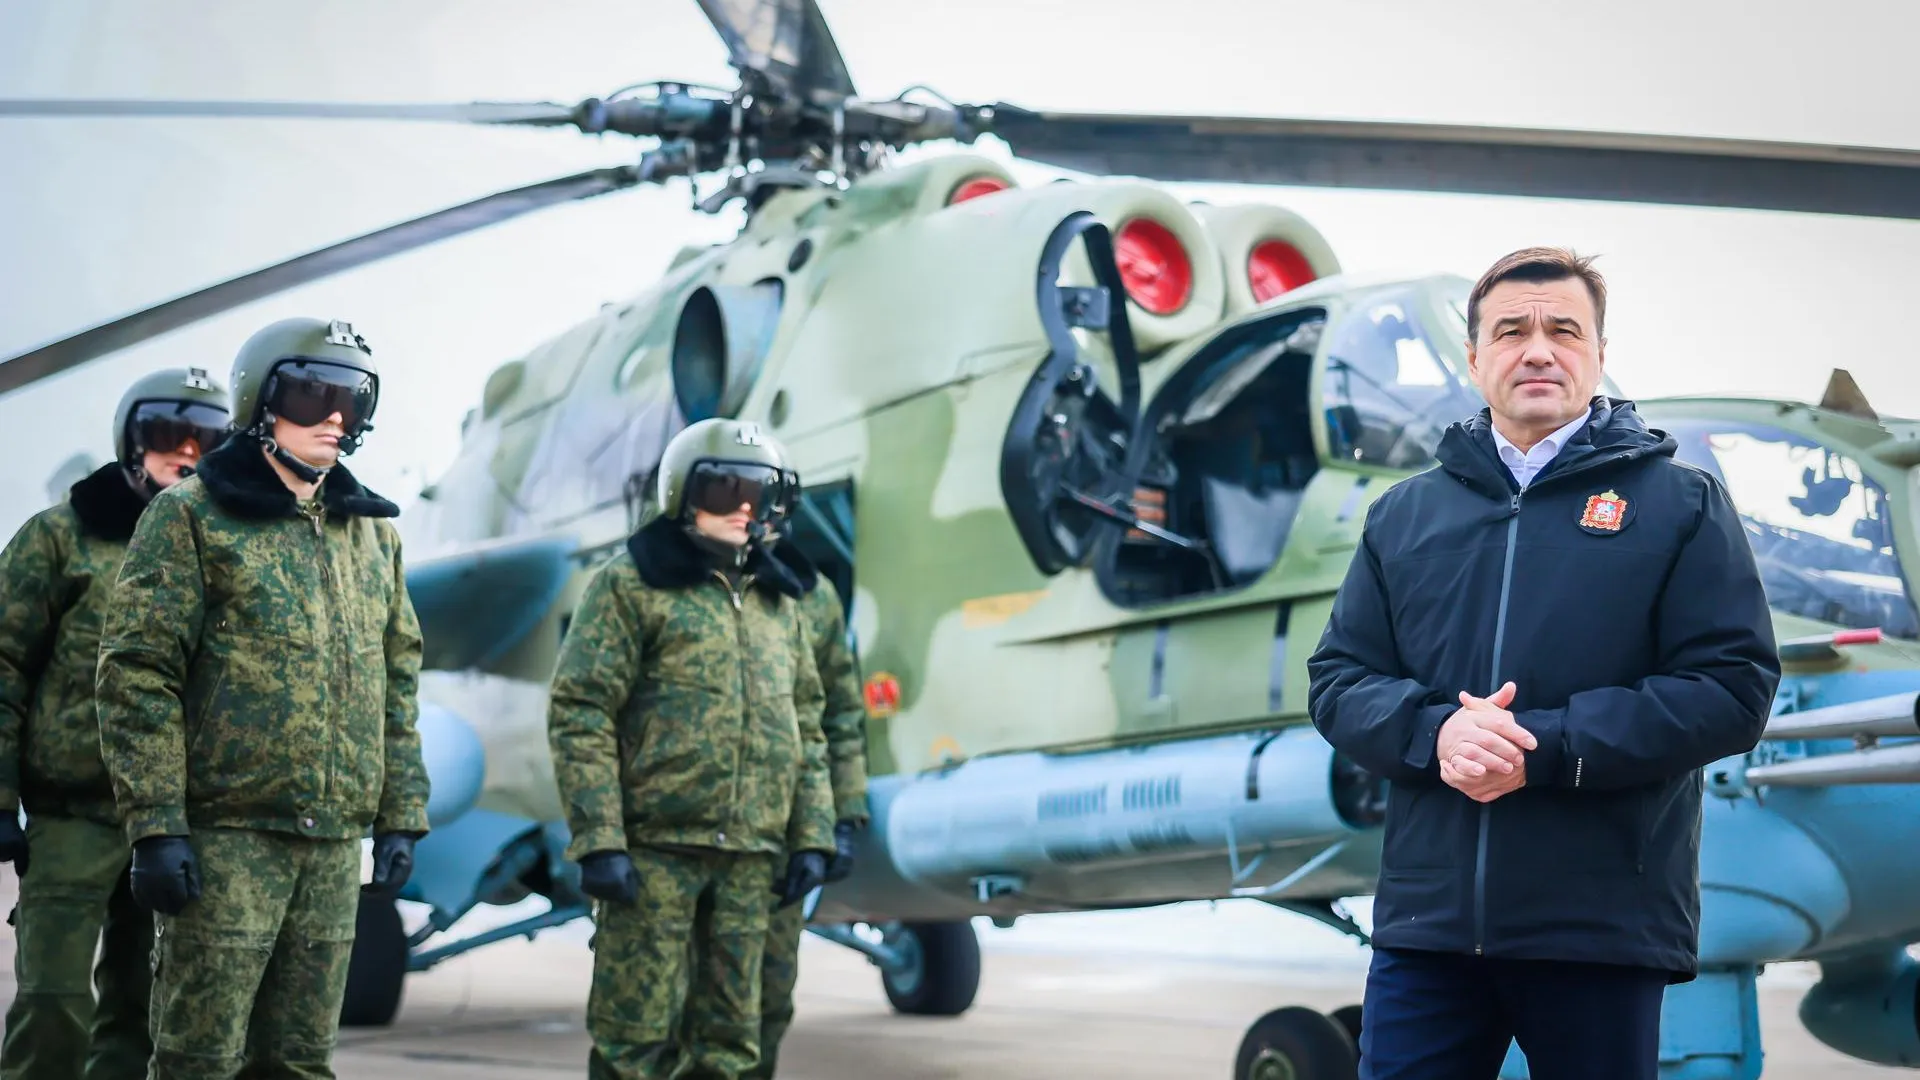 Воробьев о поездке в вертолетную эскадрилью: мы можем помочь бойцам и их близким